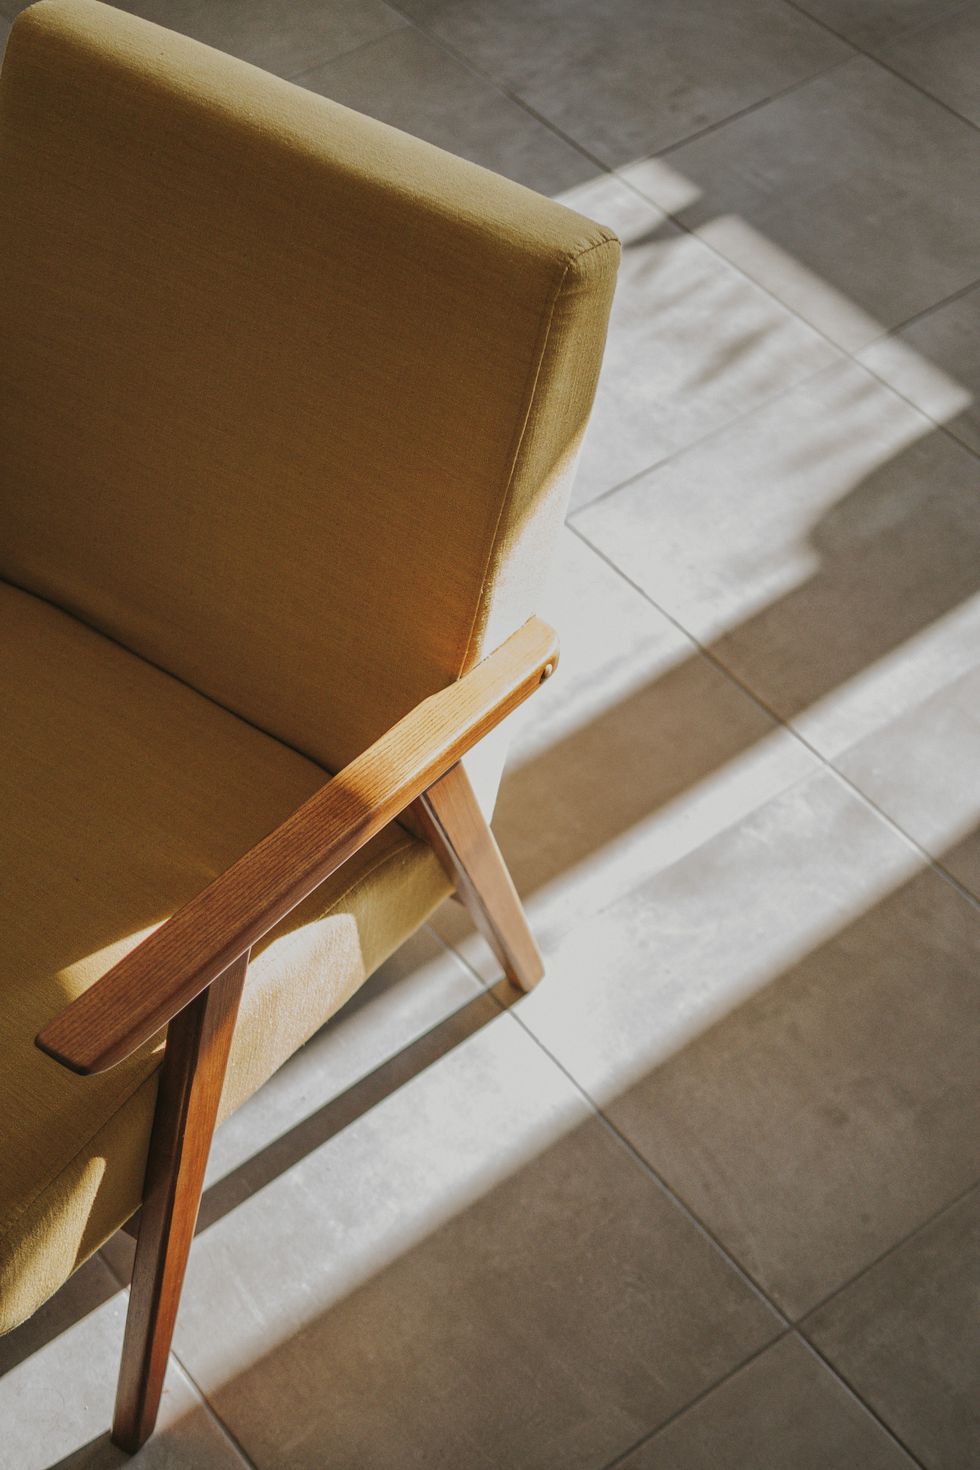 a chair on a tile floor